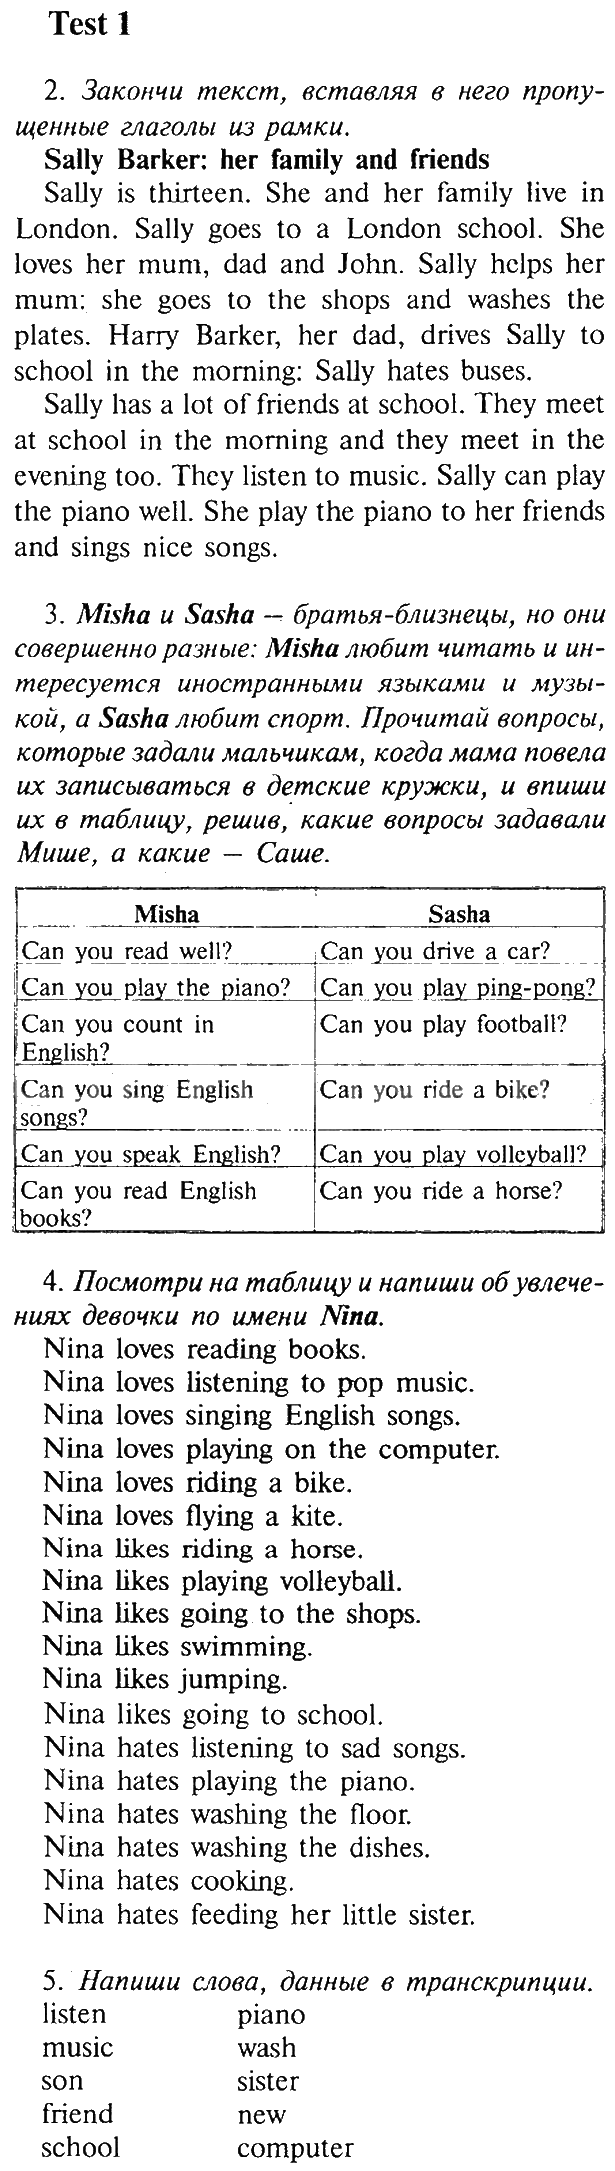 Скачать решебник с переводами текстов по английскому 9 класс афанасьева михеева углубленное